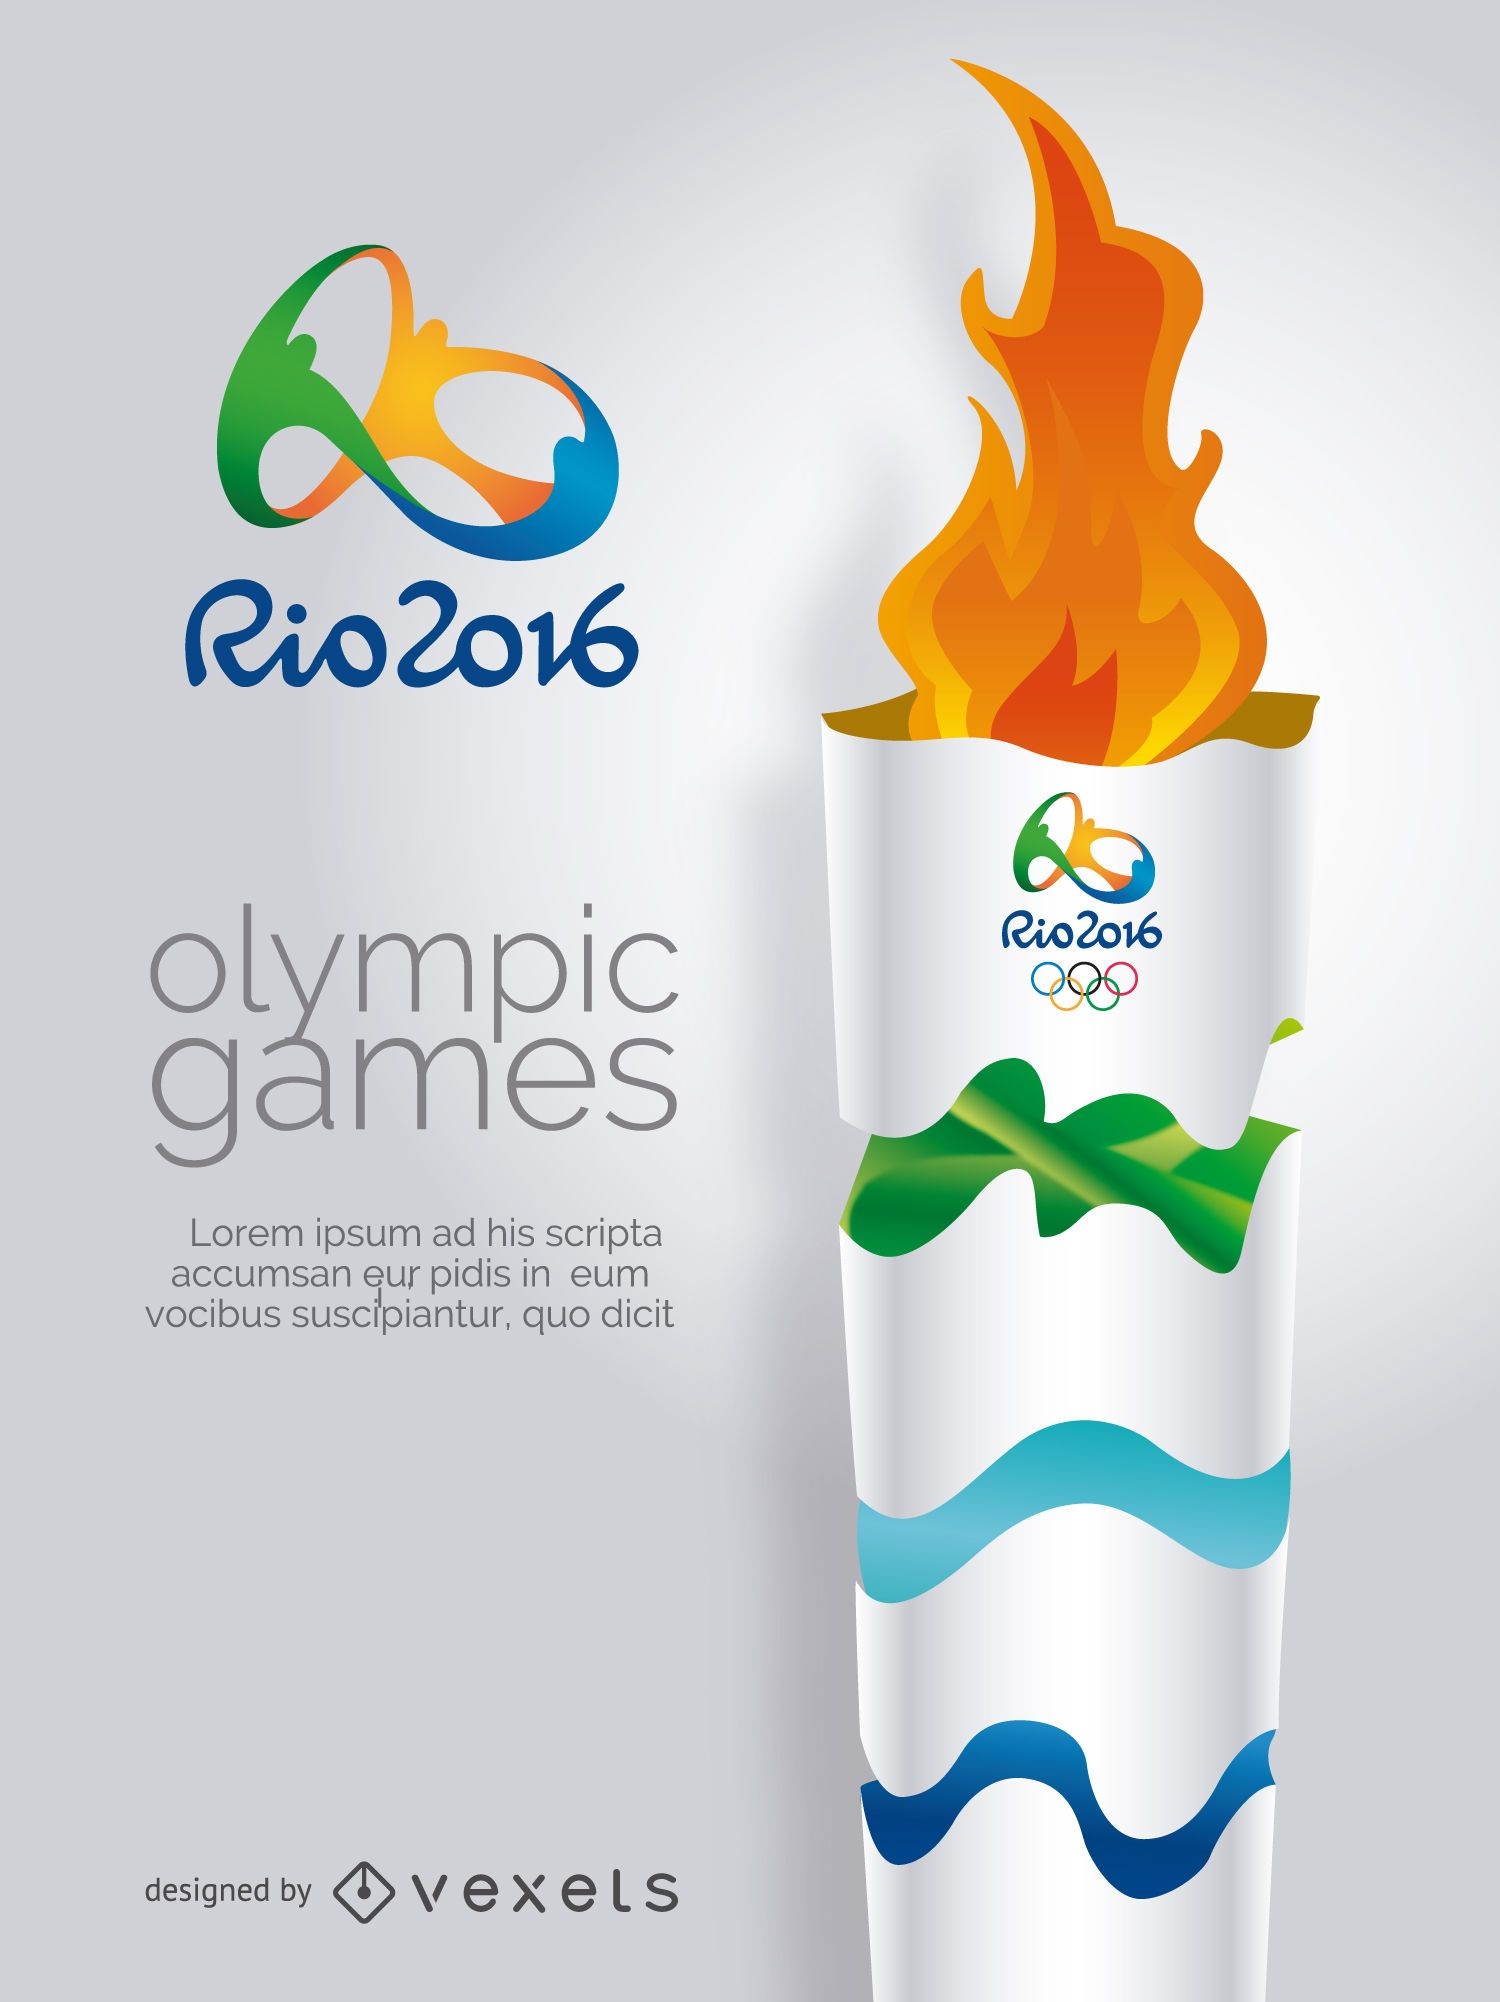 Jogos Olímpicos Rio 2016 - Tocha Olímpica